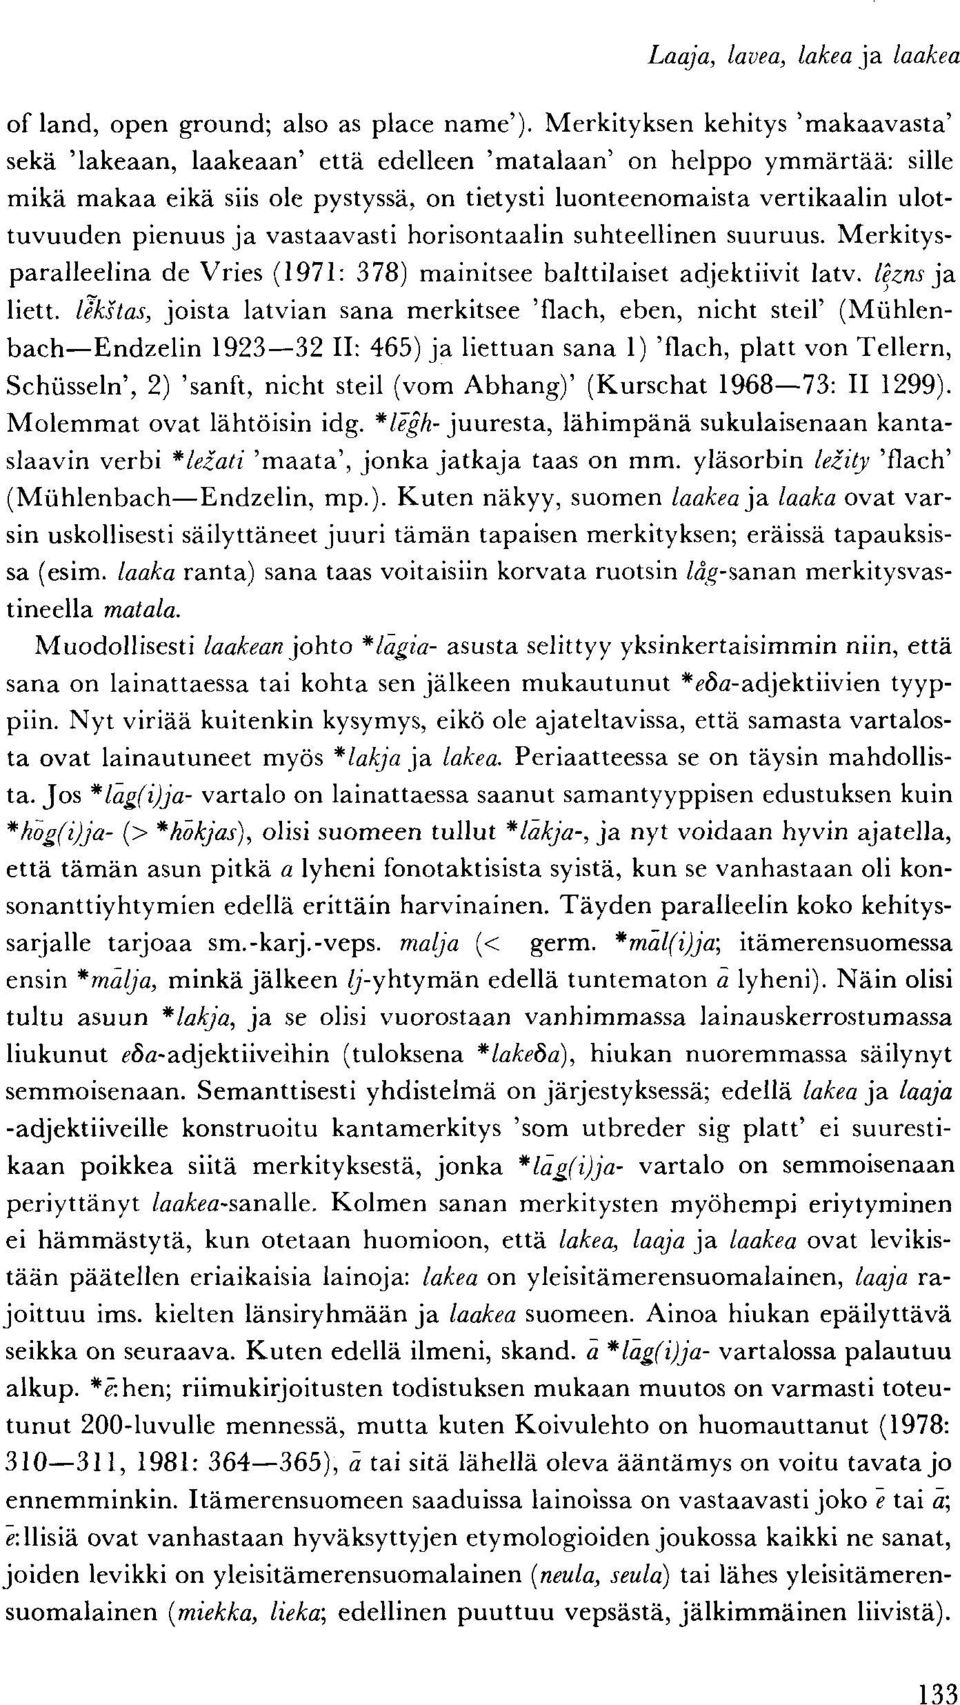 pienuus ja vastaavasti horisontaalin suhteellinen suuruus. Merkitysparalleelina de Vries (1971: 378) mainitsee balttilaiset adjektiivit latv. lezns ja liett.